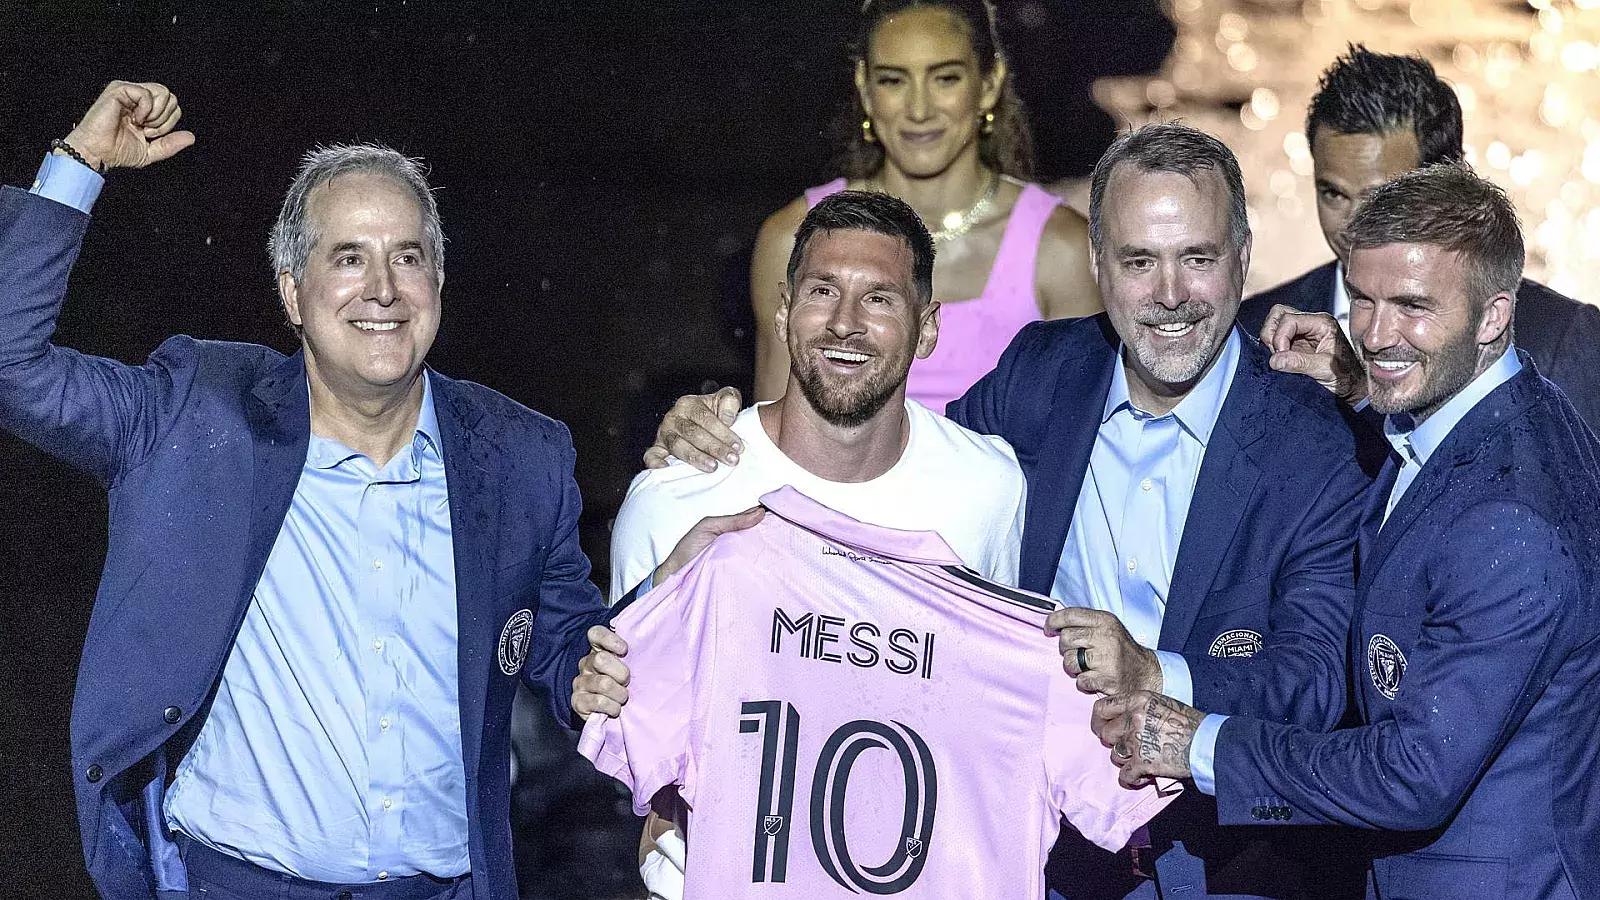 Messi con el Inter de Miami: Estos son los famosos que le dieron la bienvenida al “10”